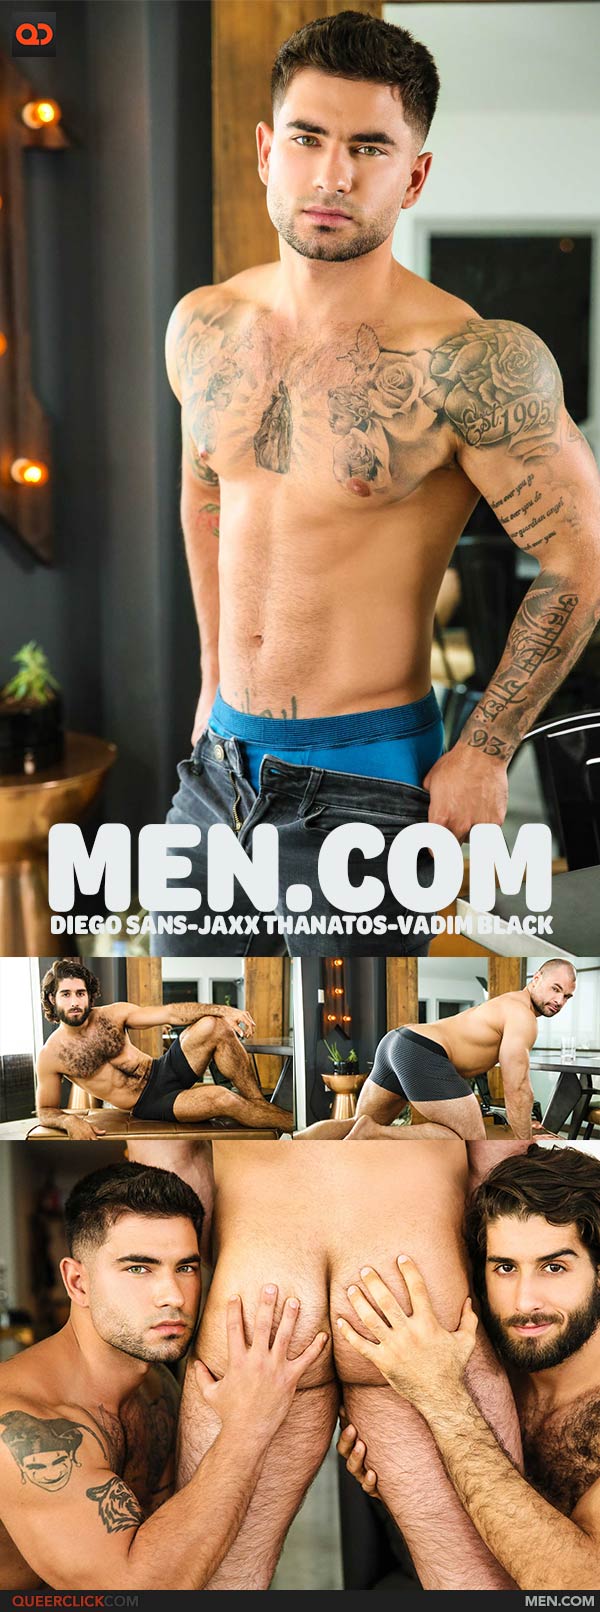 Men.com:  Diego Sans, Jaxx Thanatos and Vadim Black